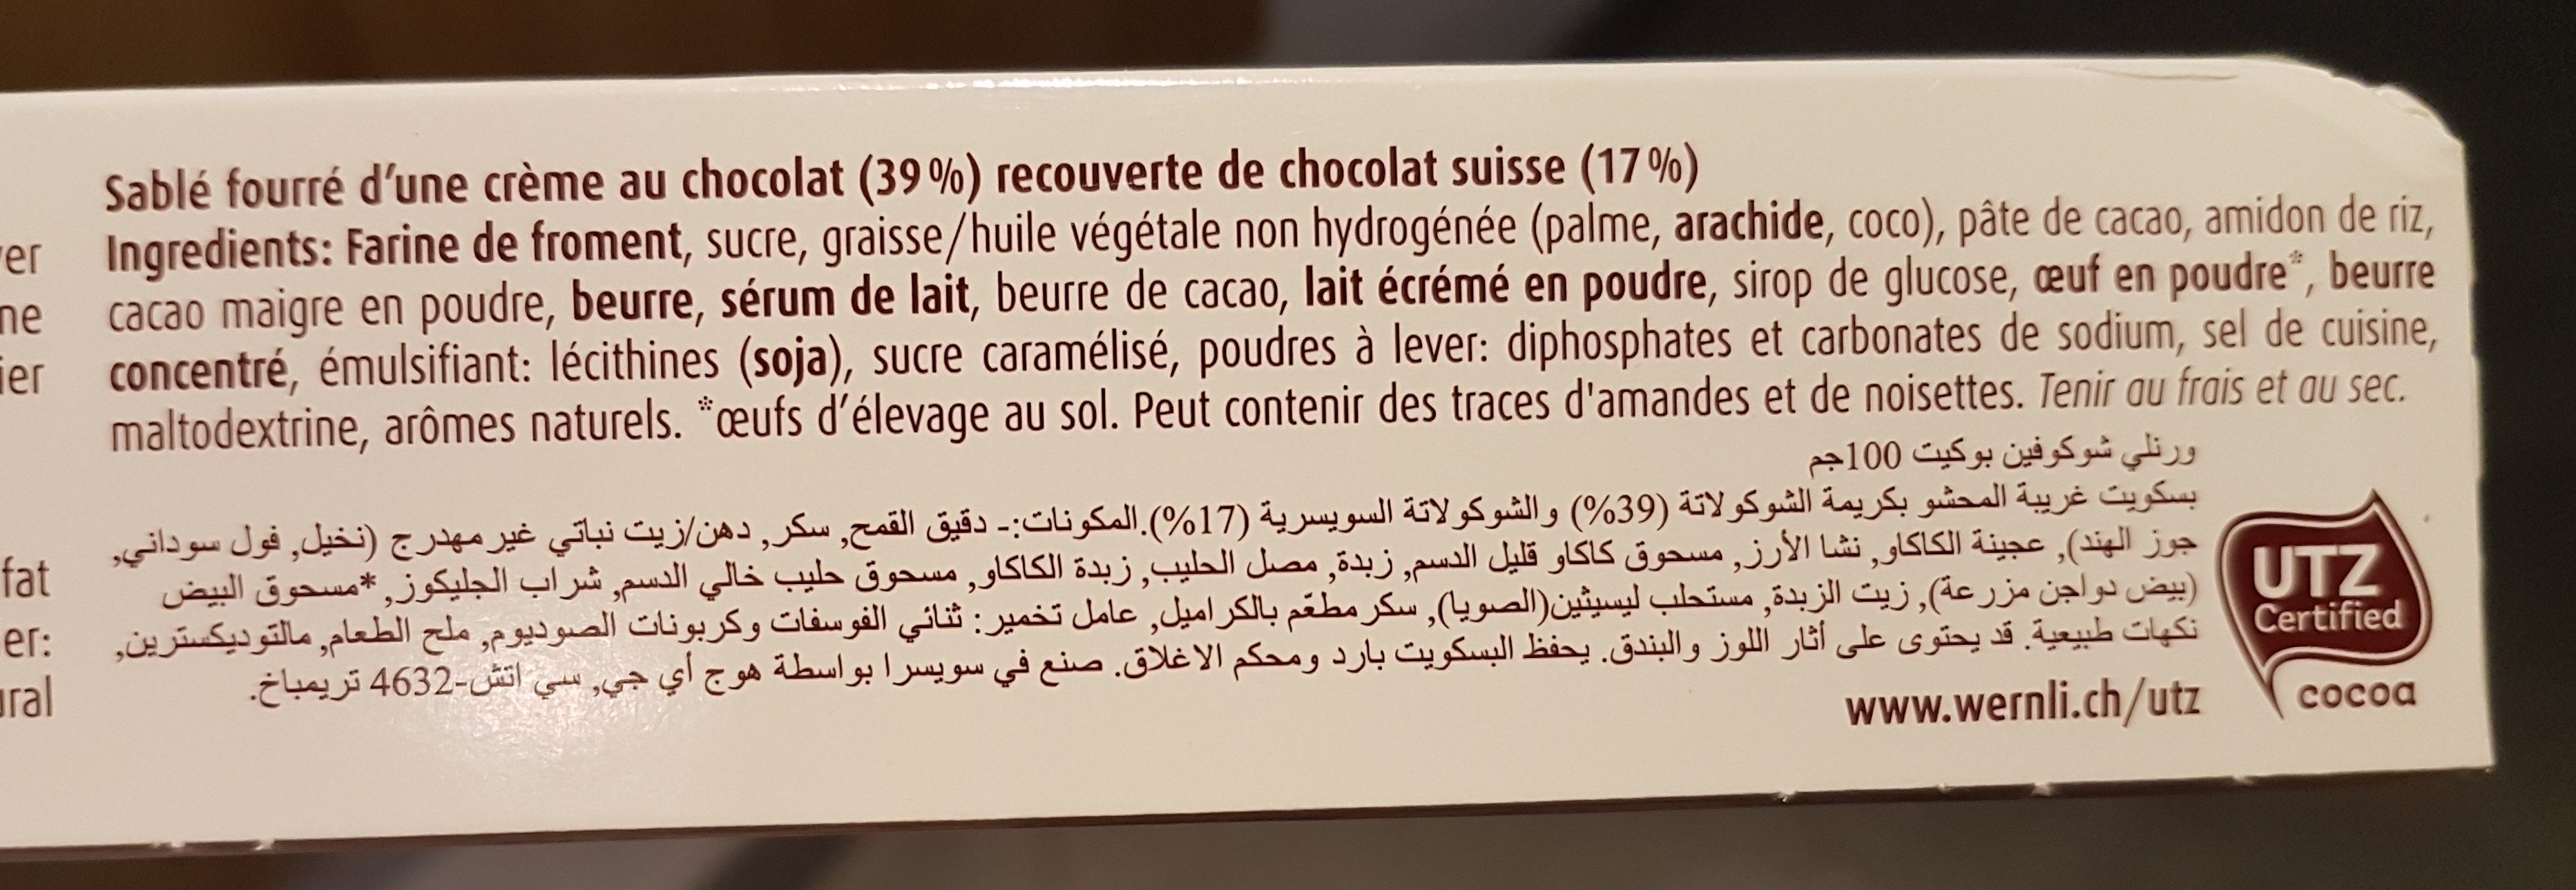 Wernli Biscuit Chocofin 100 Gr - Ingredients - fr